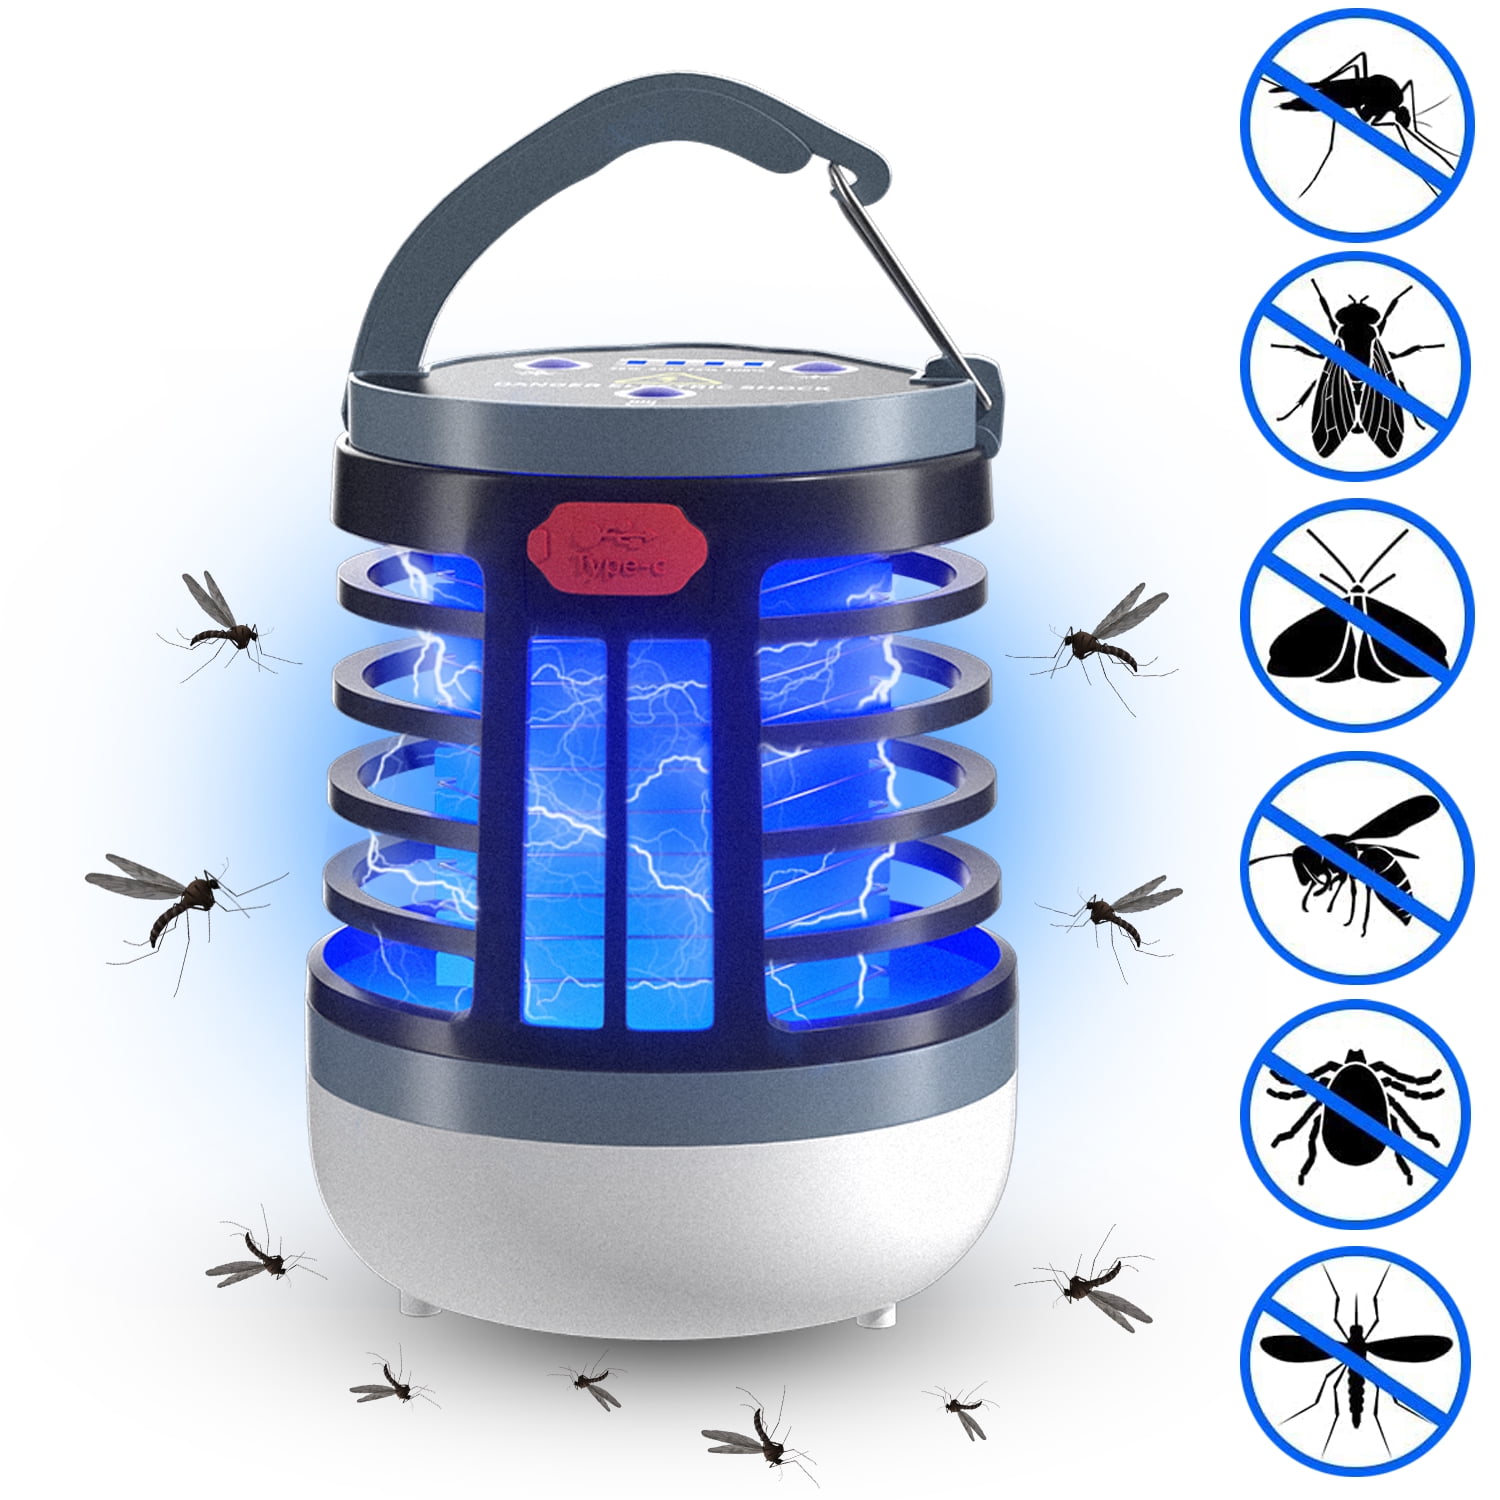 Black+decker Indoor/Outdoor Bug Zapper and Mosquito Repellent | BDPC941